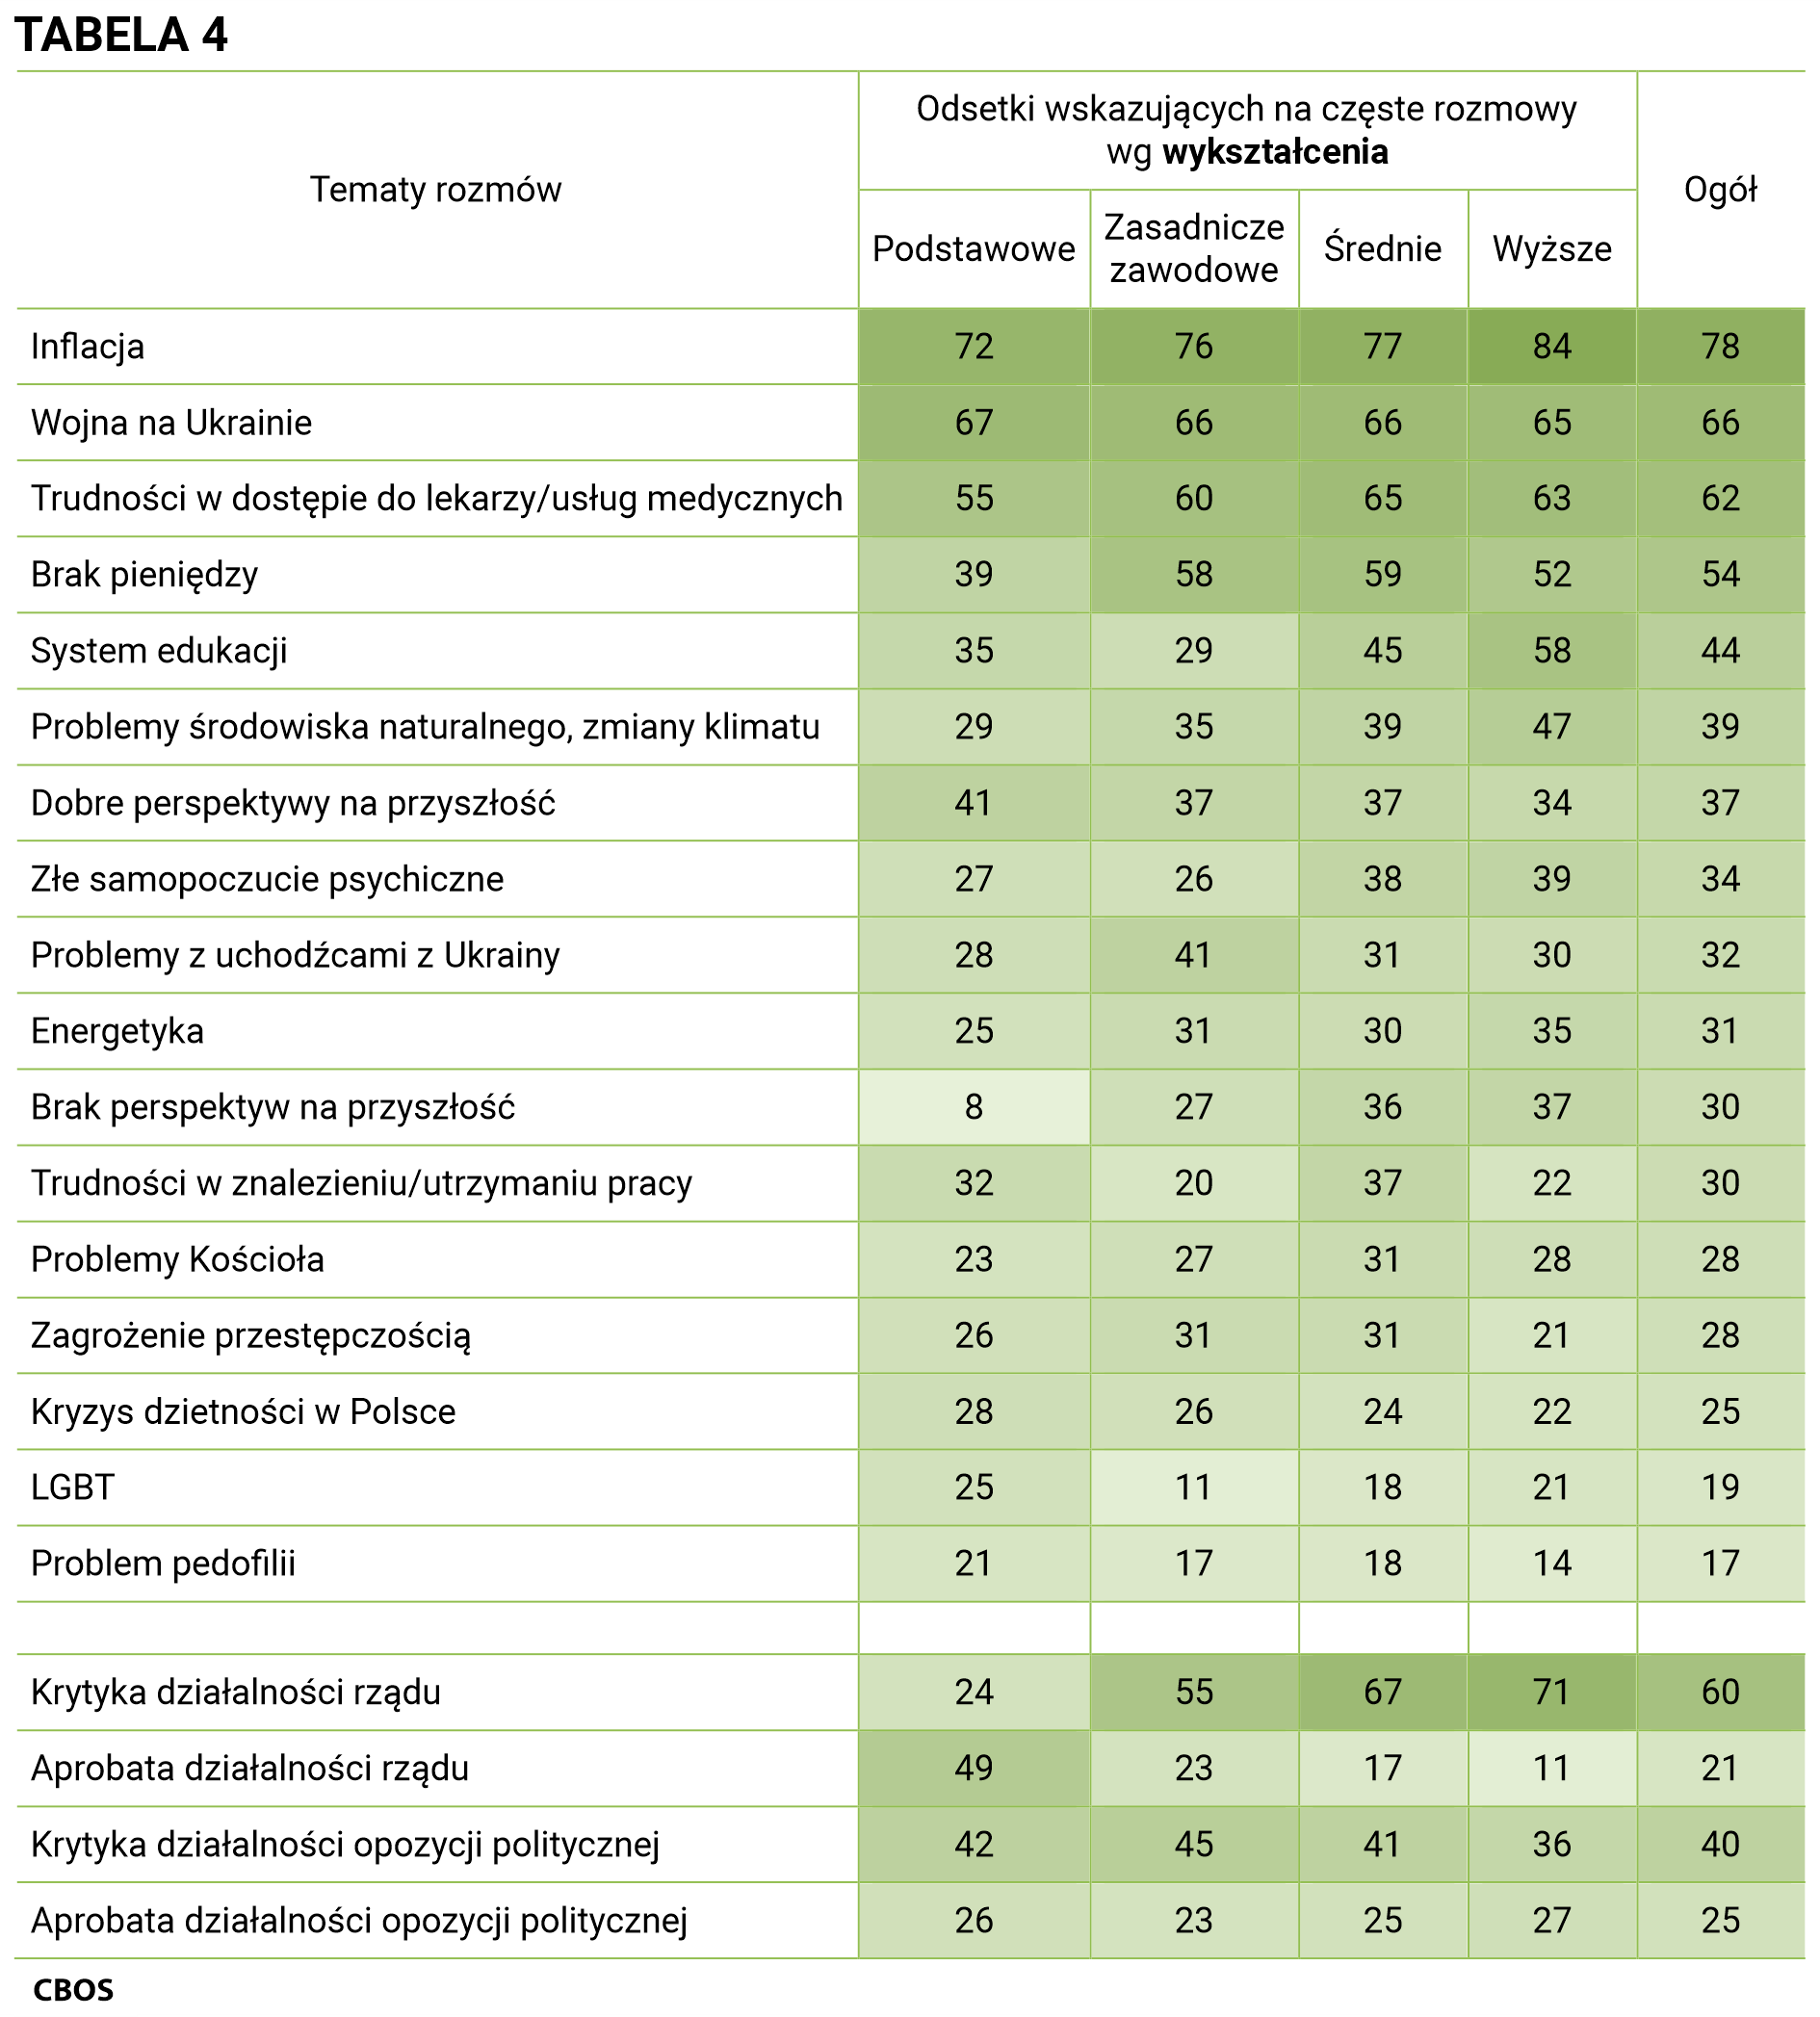 Tabela 4 Tematy rozmów i odsetki wskazujących na częste rozmowy według wykształcenia. Inflacja - Ogół (78%), Podstawowe (72%), Zasadnicze zawodowe (76%), Średnie (77%), Wyższe (84%); Wojna na Ukrainie - Ogół (66%), Podstawowe (67%), Zasadnicze zawodowe (66%), Średnie (66%), Wyższe (65%); Trudności w dostępie do lekarzy/usług medycznych - Ogół (62%), Podstawowe (55%), Zasadnicze zawodowe (60%), Średnie (65%), Wyższe (63%); Brak pieniędzy - Ogół (54%), Podstawowe (39%), Zasadnicze zawodowe (58%), Średnie (59%), Wyższe (52%); System edukacji - Ogół (44%), Podstawowe (35%), Zasadnicze zawodowe (29%), Średnie (45%), Wyższe (58%); Problemy środowiska naturalnego, zmiany klimatu - Ogół (39%), Podstawowe (29%), Zasadnicze zawodowe (35%), Średnie (39%), Wyższe (47%); Dobre perspektywy na przyszłość - Ogół (37%), Podstawowe (41%), Zasadnicze zawodowe (37%), Średnie (37%), Wyższe (34%); Złe samopoczucie psychiczne - Ogół (34%), Podstawowe (27%), Zasadnicze zawodowe (26%), Średnie (38%), Wyższe (39%); Problemy z uchodźcami z Ukrainy - Ogół (32%), Podstawowe (28%), Zasadnicze zawodowe (41%), Średnie (31%), Wyższe (30%); Energetyka - Ogół (31%), Podstawowe (25%), Zasadnicze zawodowe (31%), Średnie (30%), Wyższe (35%); Brak perspektyw na przyszłość - Ogół (30%), Podstawowe (8%), Zasadnicze zawodowe (27%), Średnie (36%), Wyższe (37%); Trudności w znalezieniu/utrzymaniu pracy - Ogół (30%), Podstawowe (32%), Zasadnicze zawodowe (20%), Średnie (37%), Wyższe (22%); Problemy Kościoła - Ogół (28%), Podstawowe (23%), Zasadnicze zawodowe (27%), Średnie (31%), Wyższe (28%); Zagrożenie przestępczością - Ogół (28%), Podstawowe (26%), Zasadnicze zawodowe (31%), Średnie (31%), Wyższe (21%); Kryzys dzietności w Polsce - Ogół (25%), Podstawowe (28%), Zasadnicze zawodowe (26%), Średnie (24%), Wyższe (22%); LGBT - Ogół (19%), Podstawowe (25%), Zasadnicze zawodowe (11%), Średnie (18%), Wyższe (21%); Problem pedofilii - Ogół (17%), Podstawowe (21%), Zasadnicze zawodowe (17%), Średnie (18%), Wyższe (14%); Krytyka działalności rządu - Ogół (60%), Podstawowe (24%), Zasadnicze zawodowe (55%), Średnie (67%), Wyższe (71%); Aprobata działalności rządu - Ogół (21%), Podstawowe (49%), Zasadnicze zawodowe (23%), Średnie (17%), Wyższe (11%); Krytyka działalności opozycji politycznej - Ogół (40%), Podstawowe (42%), Zasadnicze zawodowe (45%), Średnie (41%), Wyższe (36%); Aprobata działalności opozycji politycznej - Ogół (25%), Podstawowe (26%), Zasadnicze zawodowe (23%), Średnie (25%), Wyższe (27%).